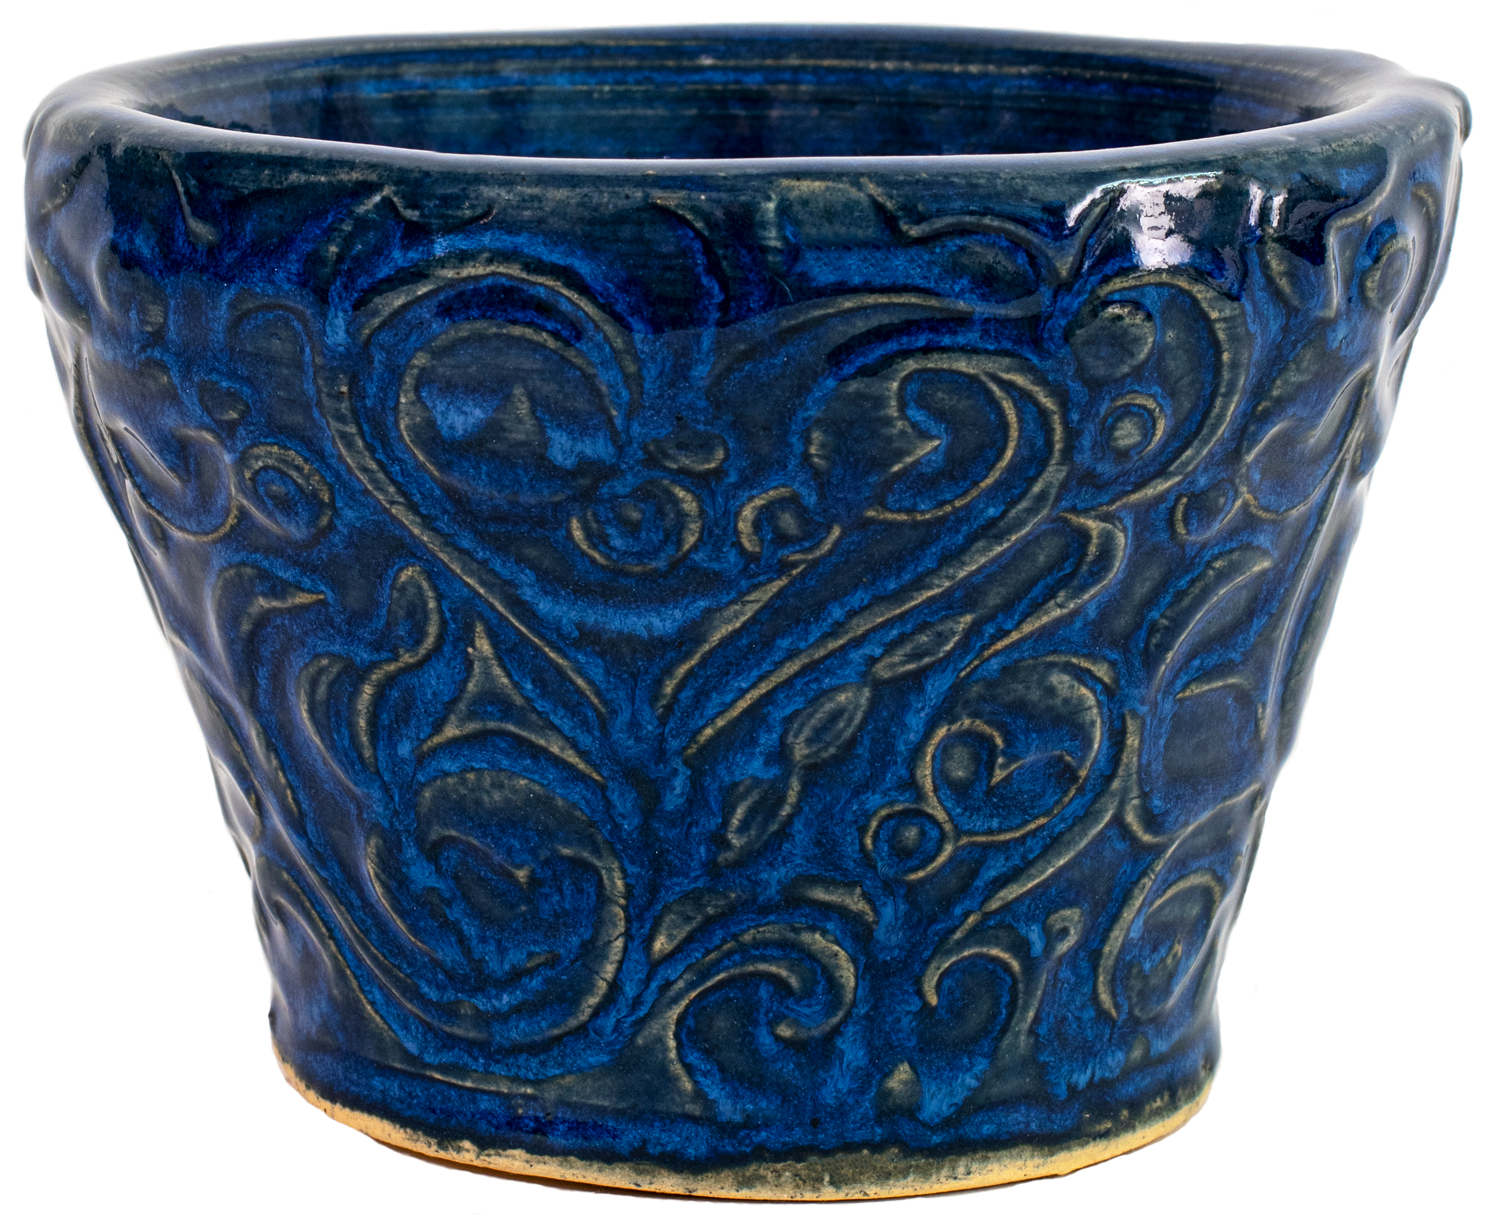 small ceramic planters in blue glaze with swirl design